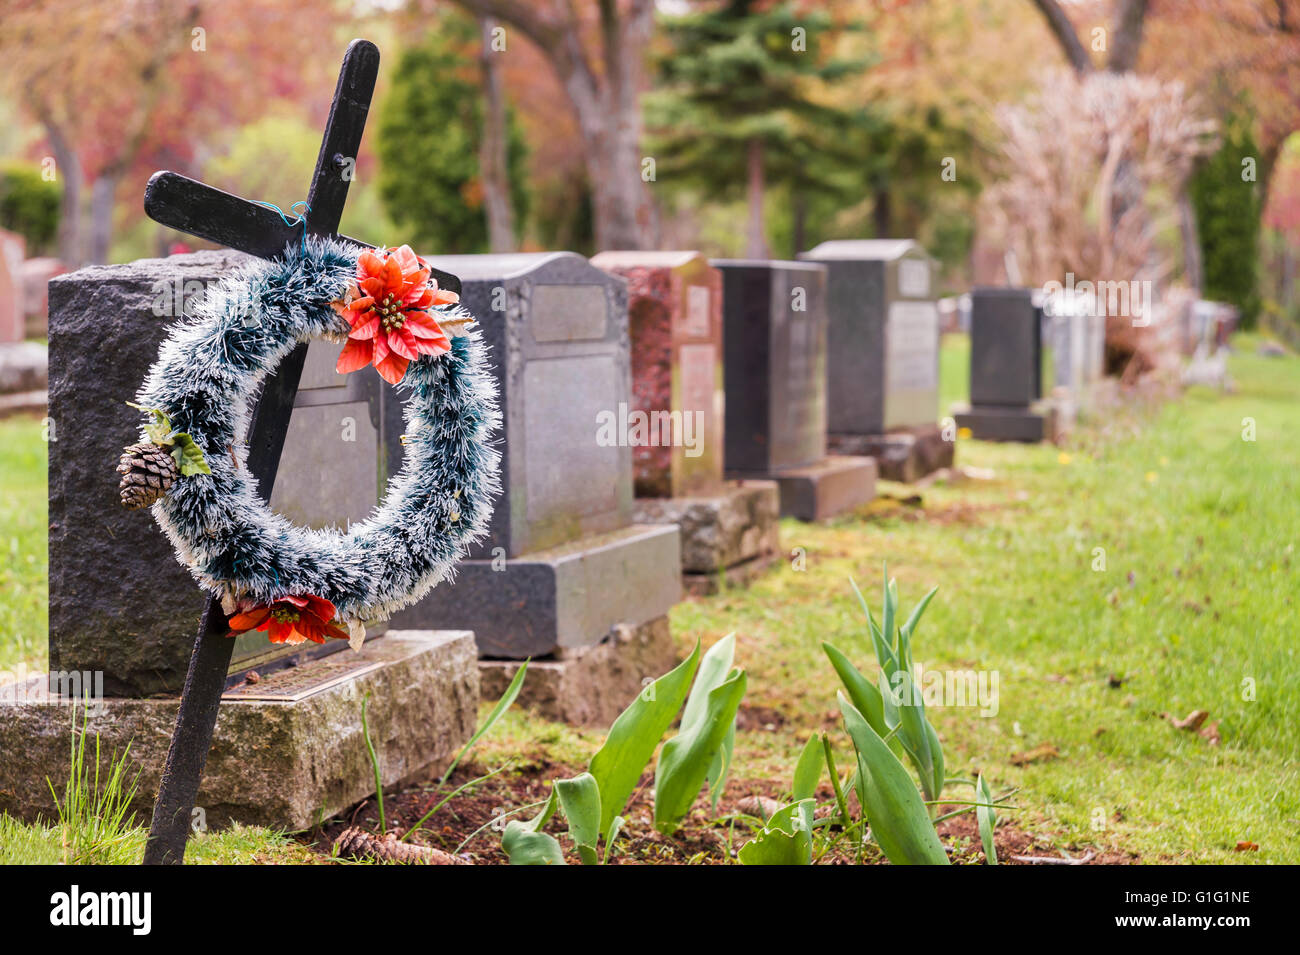 Corona funeral con flores rojas sobre una cruz, en un cementerio con muchas lápidas en el fondo. Foto de stock